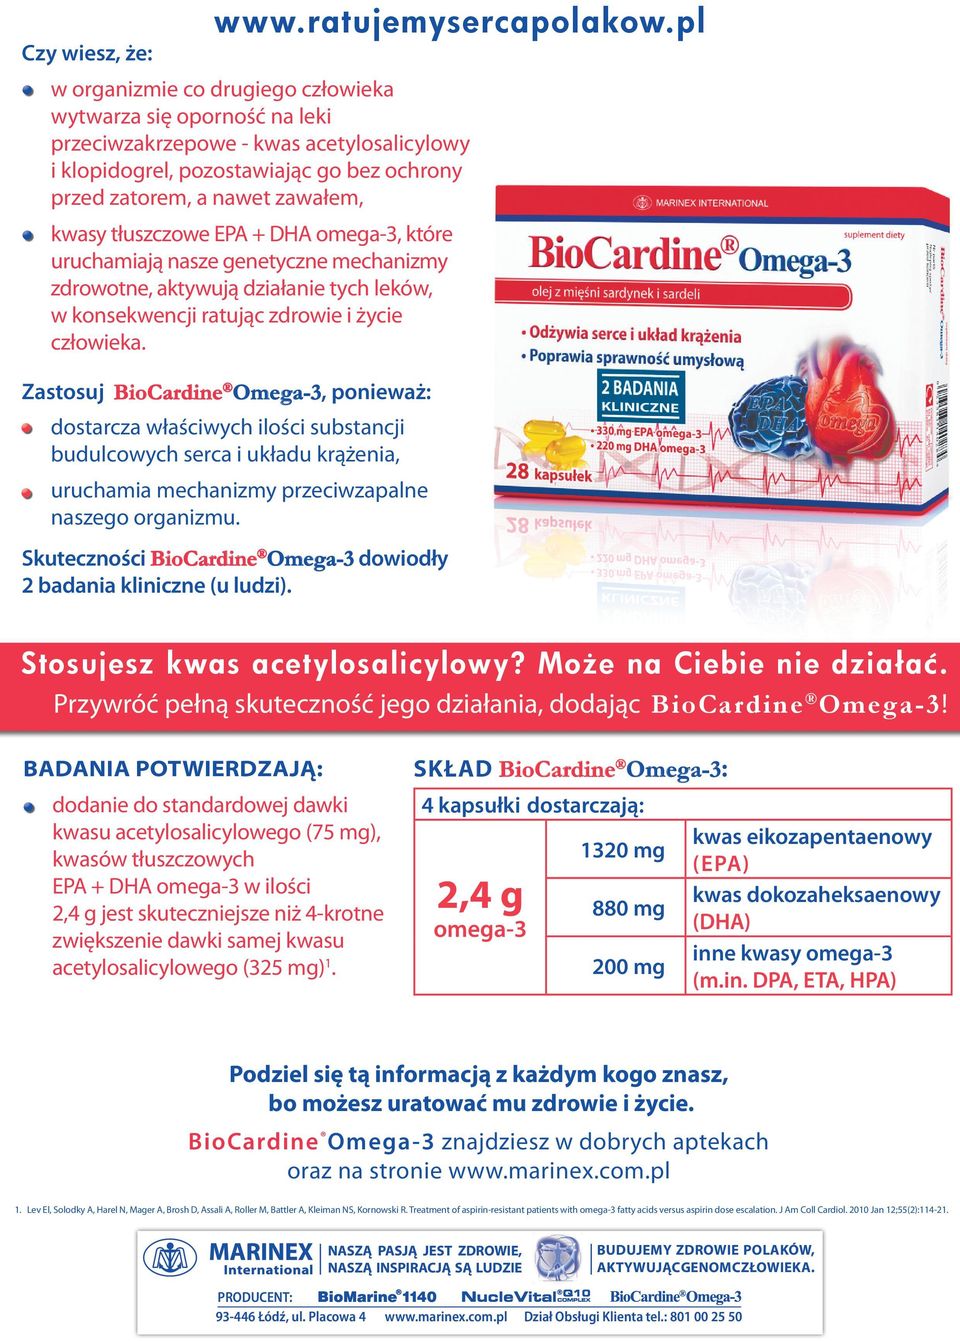 Zastosuj BioCardine Omega-3, ponieważ: dostarcza właściwych ilości substancji budulcowych serca i układu krążenia, www.ratujemysercapolakow.pl uruchamia mechanizmy przeciwzapalne naszego organizmu.